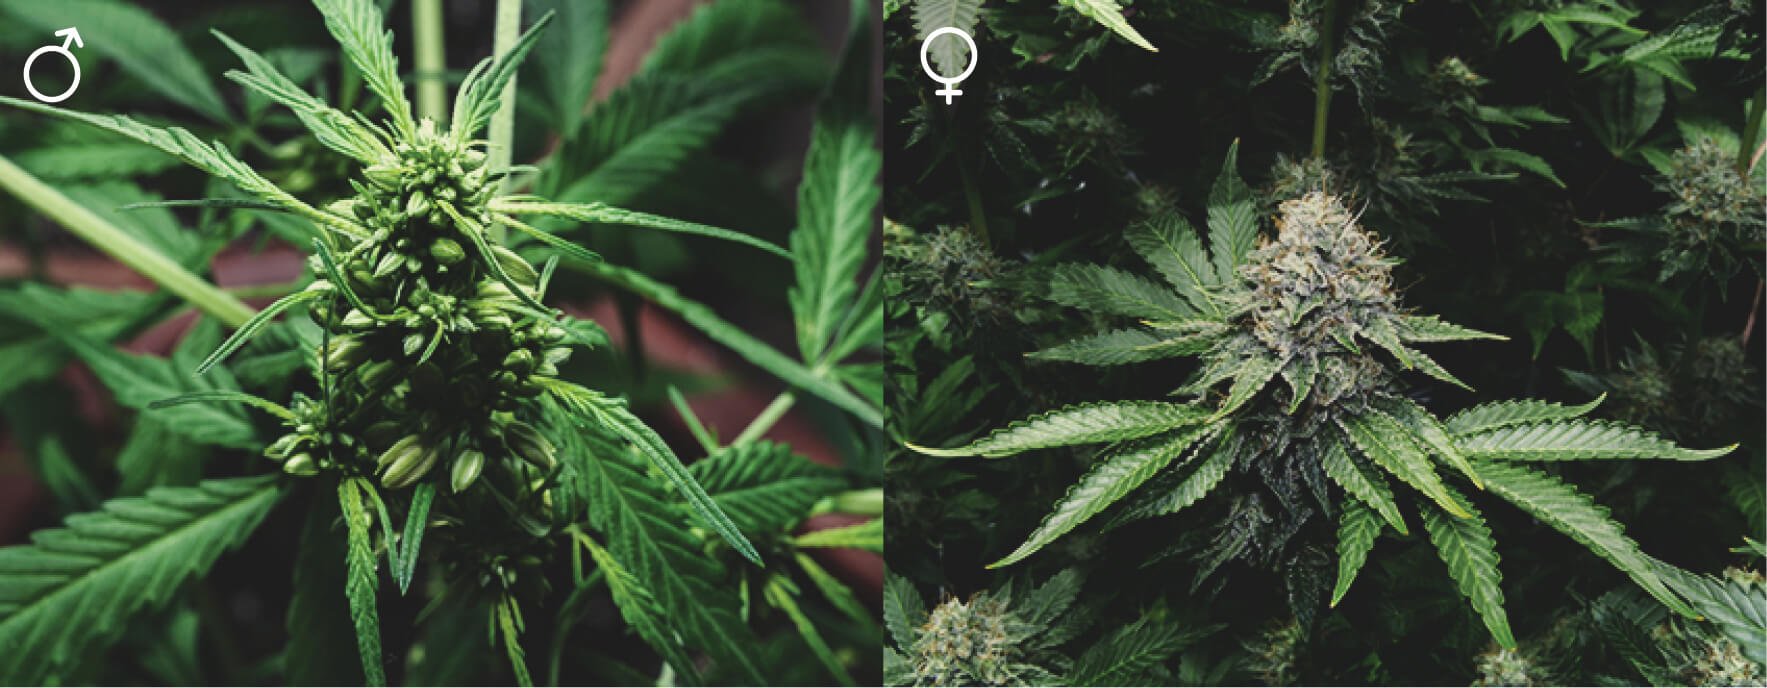 Tous Les Plants De Cannabis Sont-Ils Les Mêmes ?